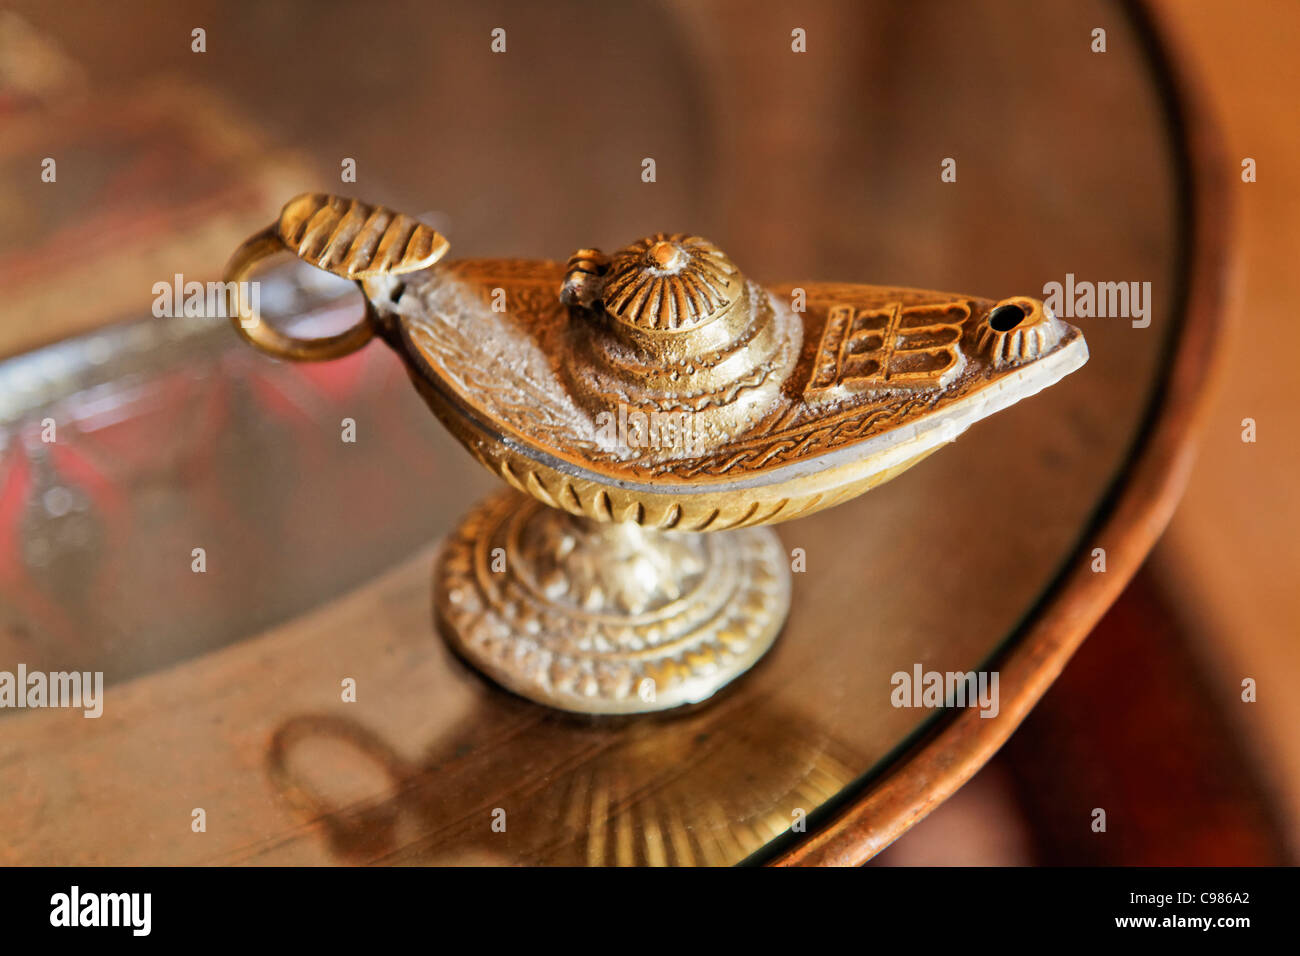 Aladdin verzierten Messing Genie Öllampe mit Griff auf eine Runde Beistelltisch Landschaft Raum zuschneiden und kopieren. Stockfoto